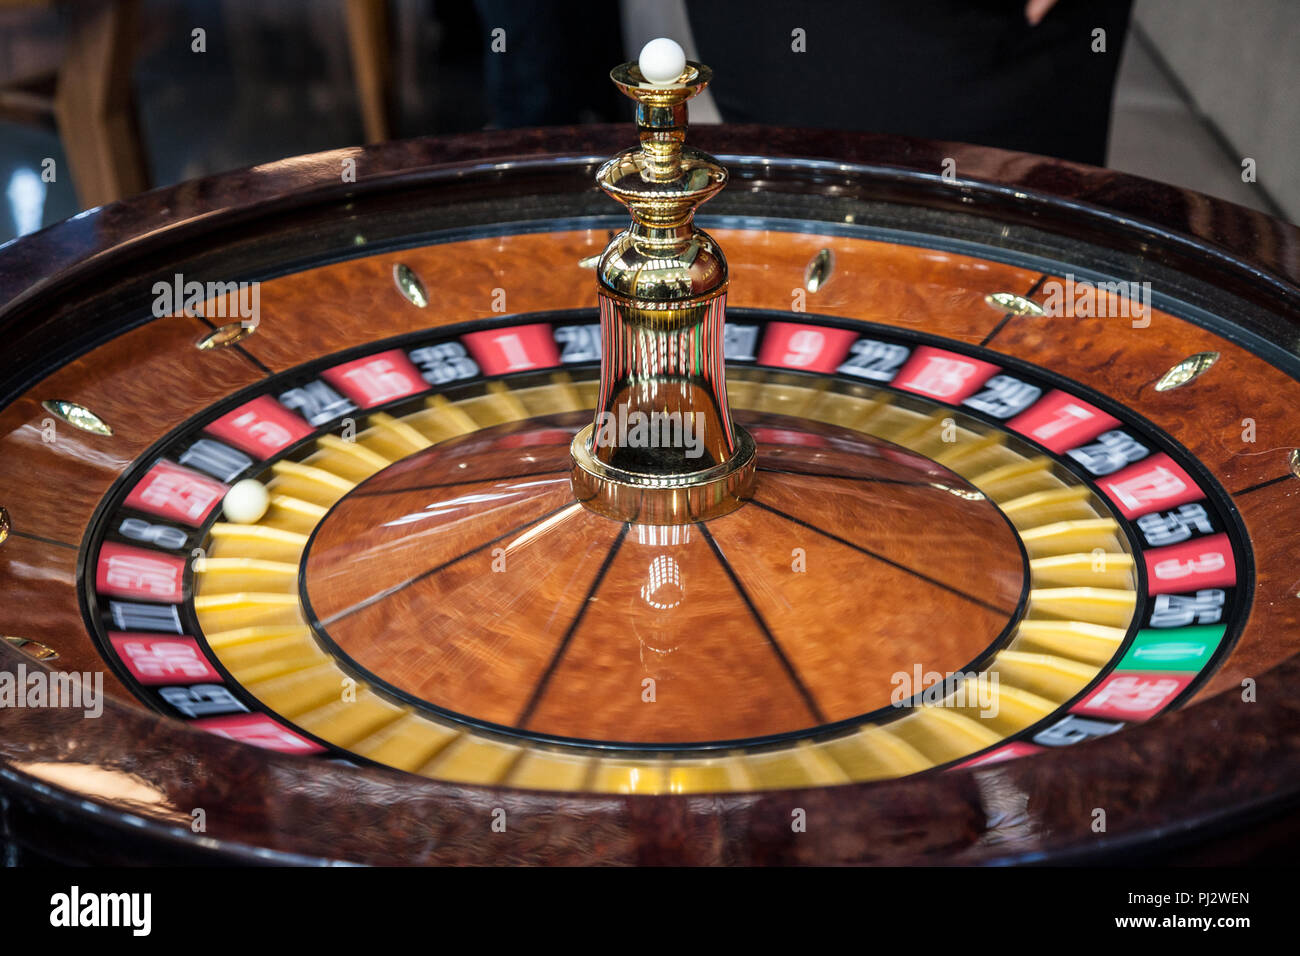 La Roulette di filatura, in movimento, durante una demo. La Roulette è un gioco d'azzardo e scommesse gioco di casino' immagine di una roulette gira veloce con un bianco ba Foto Stock